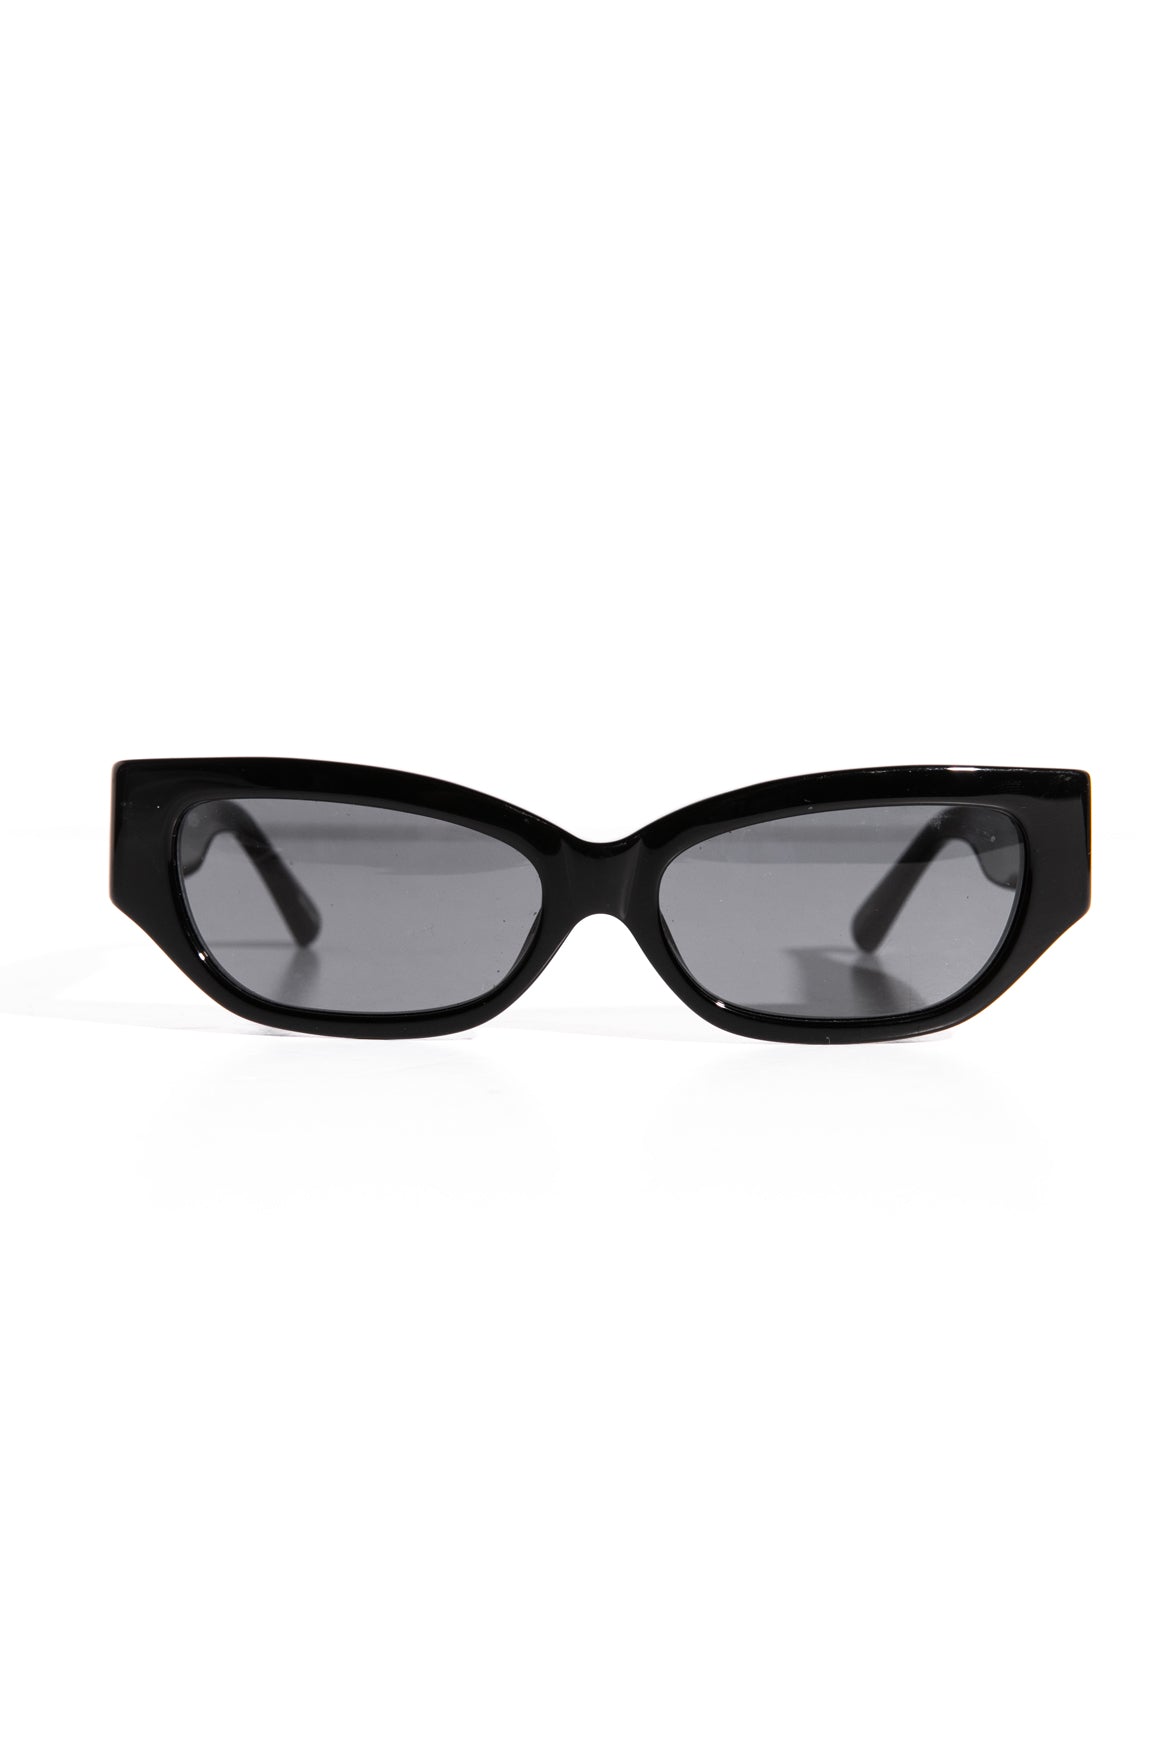 THE ATTICO Black Cat Eye Sunglasses